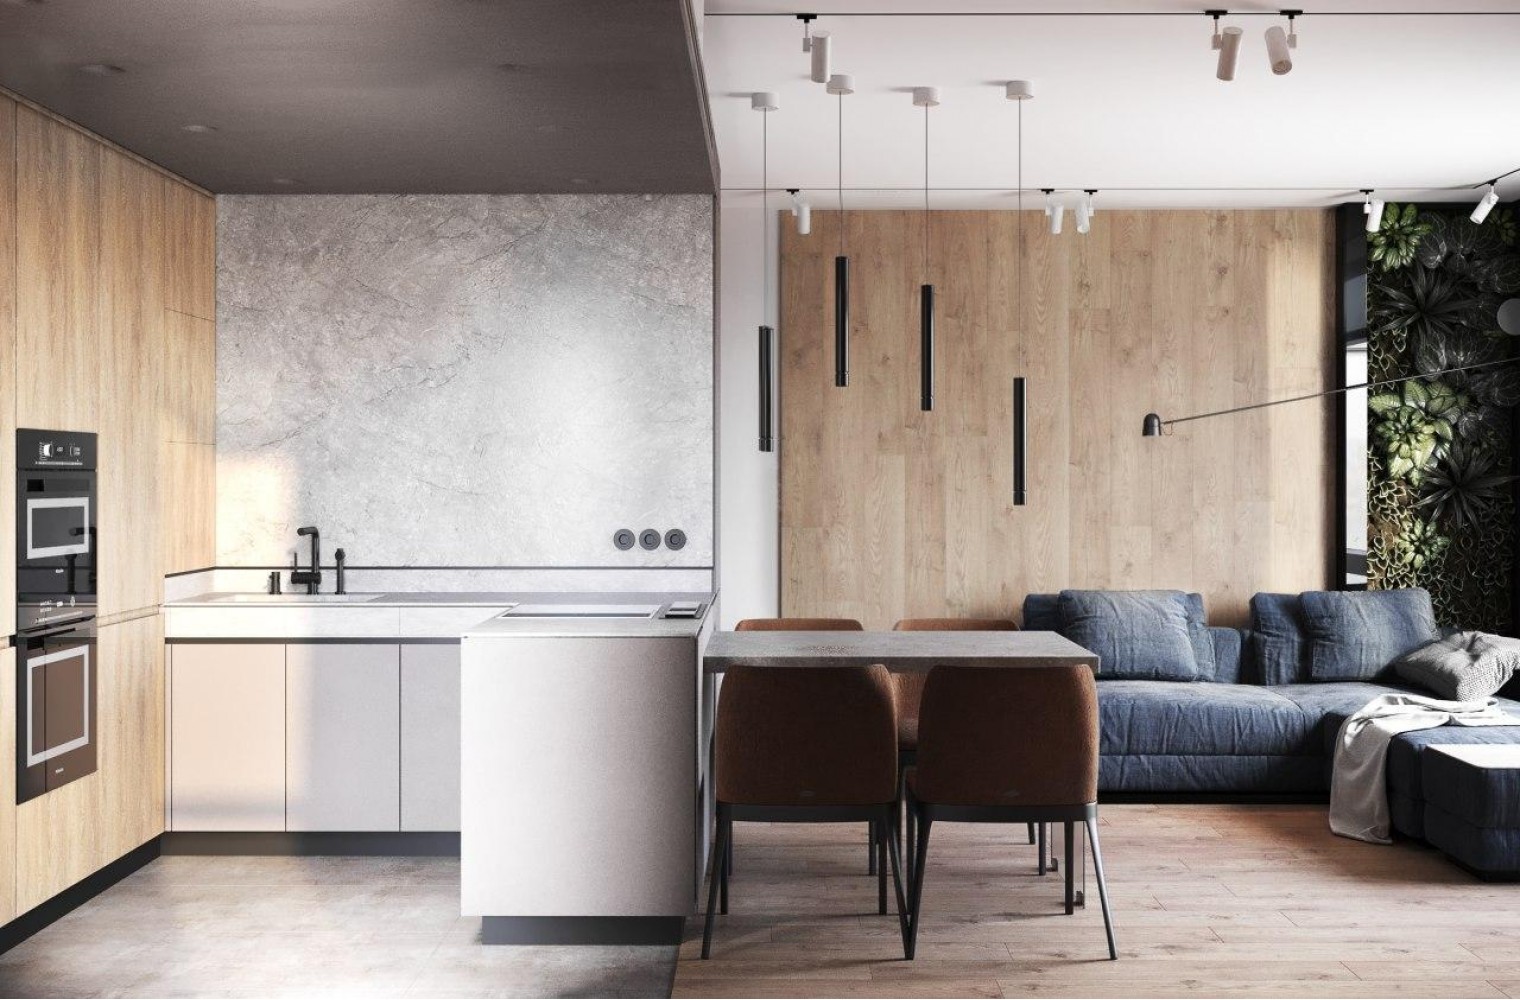 Кухня-гостиная в дизайн-проекте  квартиры  ЖК Французский квартал, 82м.кв — дизайнер Дарья Гросс